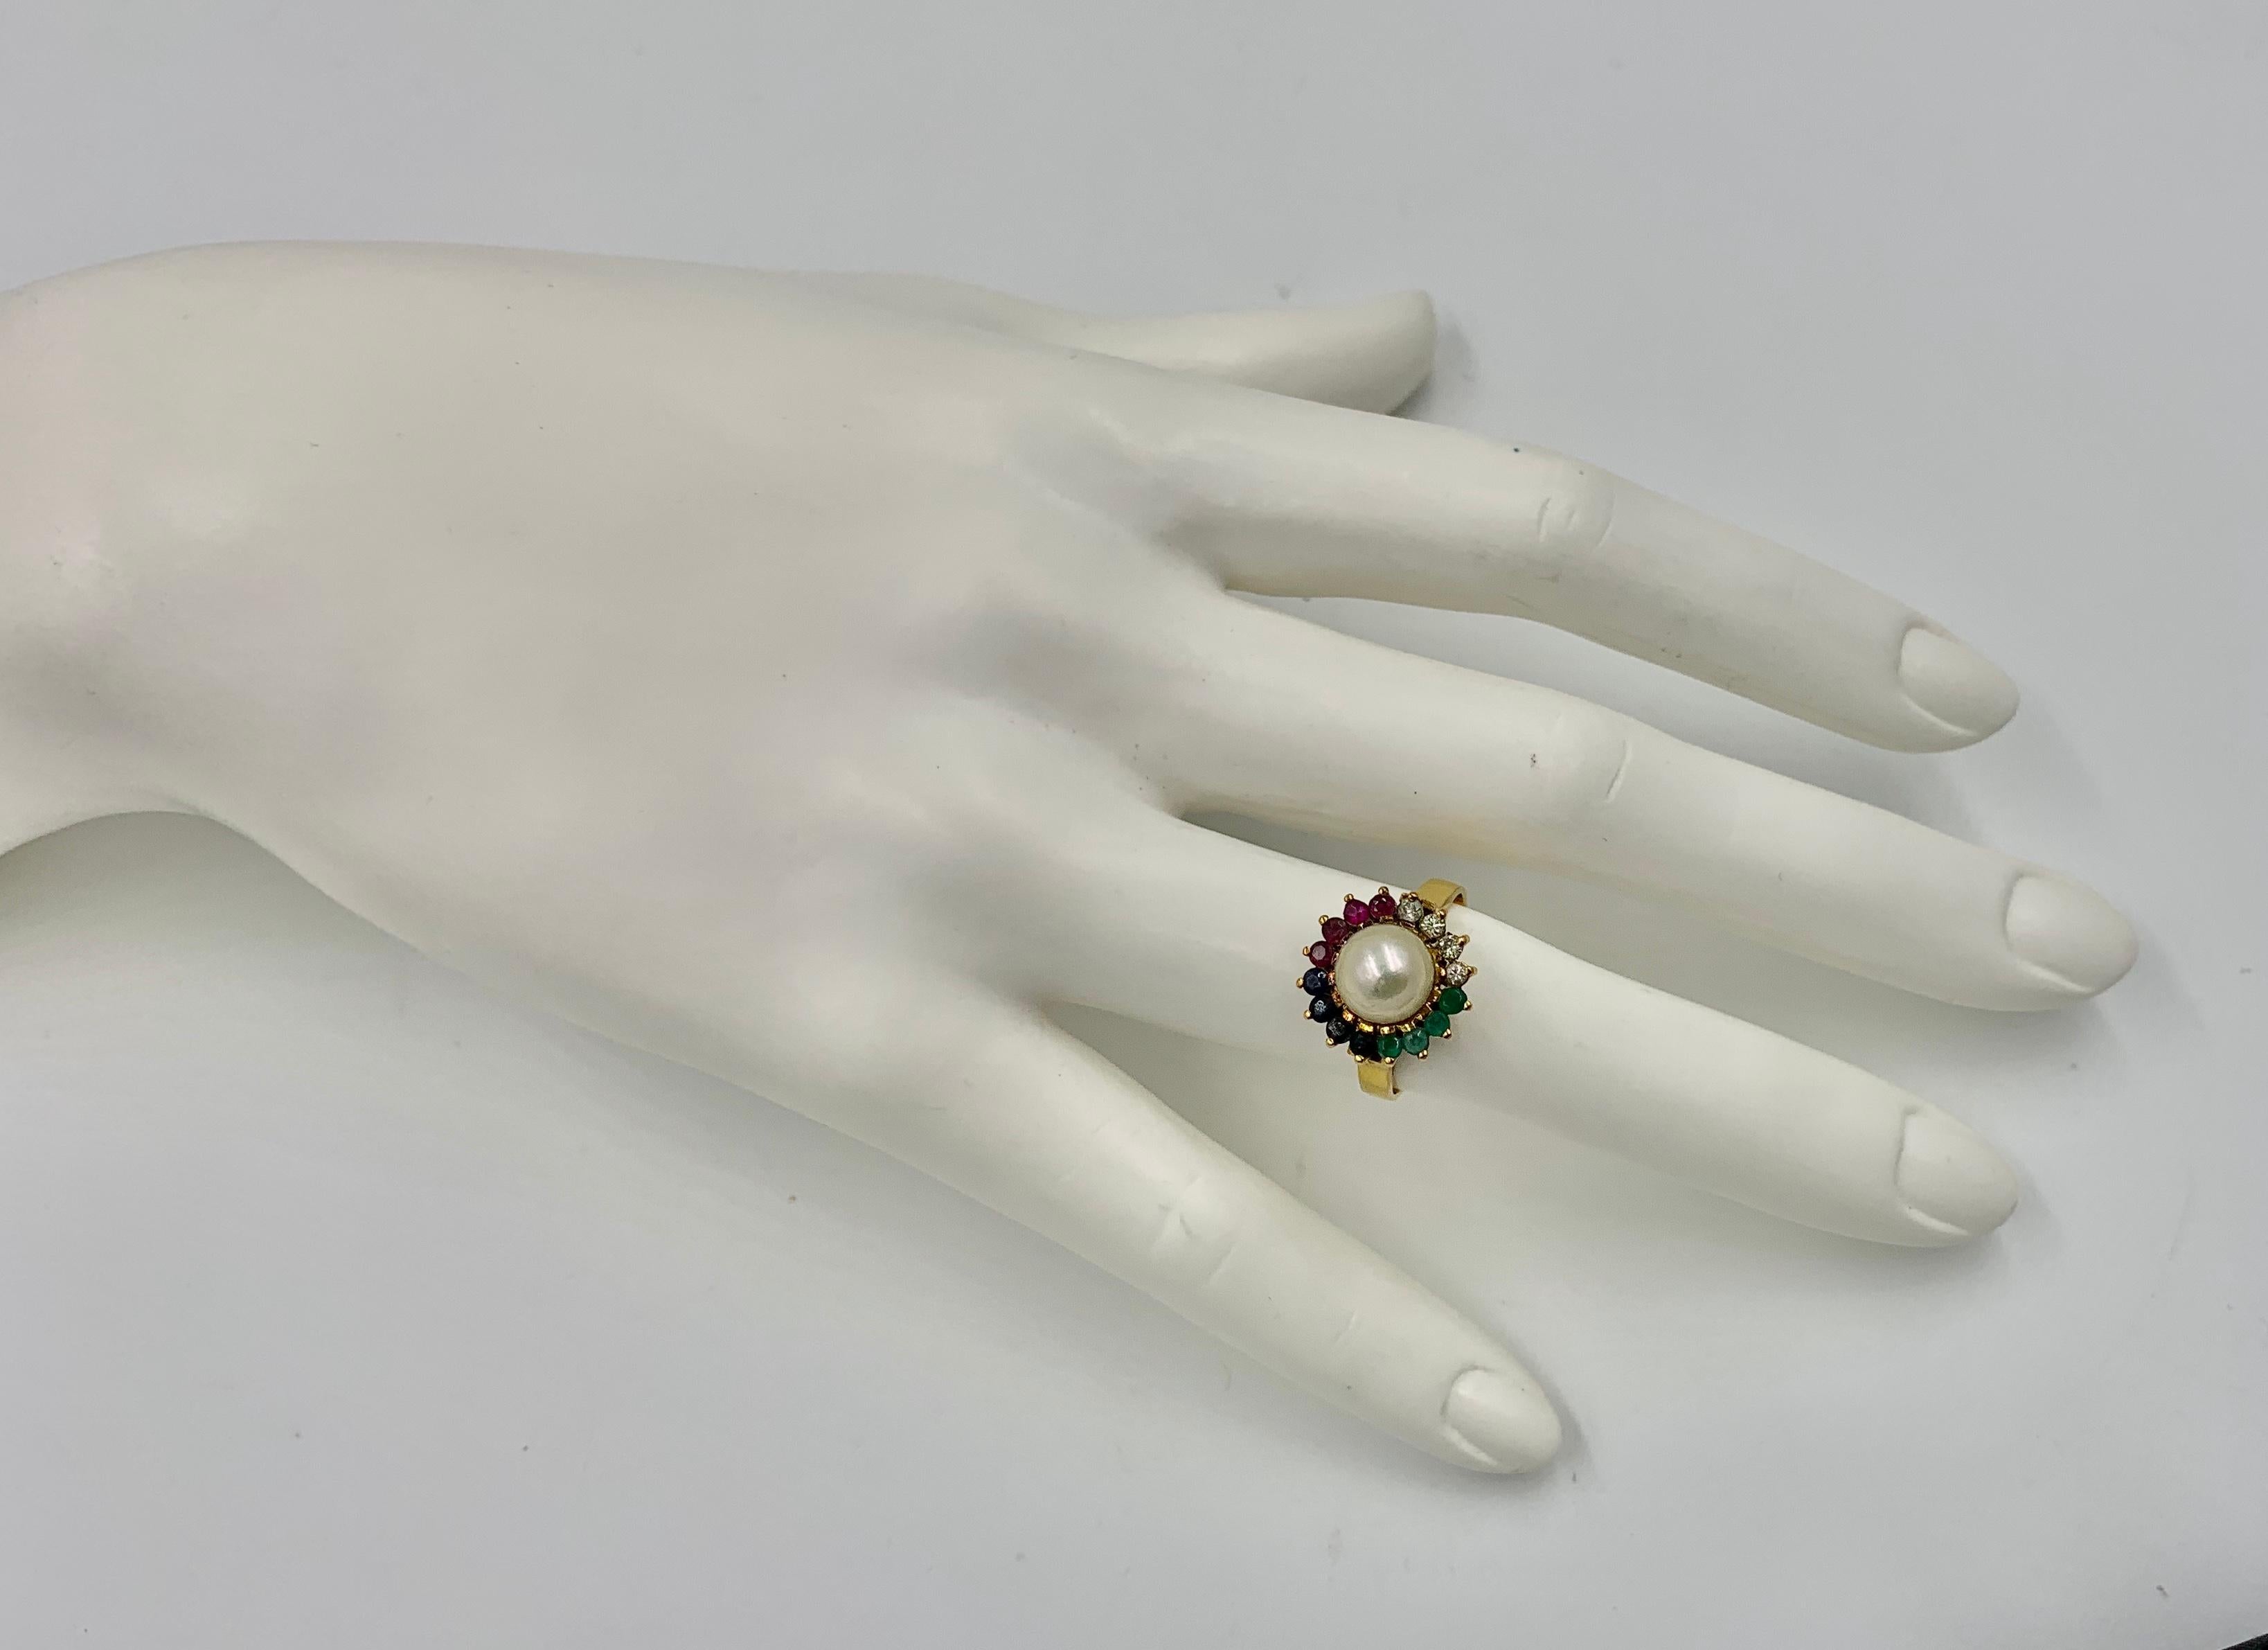 Ein atemberaubender Multi-Edelstein-Ring mit Smaragd, Saphir, Rubin und Diamanten, die eine üppige weiße Perle umgeben.  Der Ring besteht aus vier Smaragden, Rubinen, Saphiren und Diamanten, die die 8 mm große Perle umgeben.  Ich liebe die